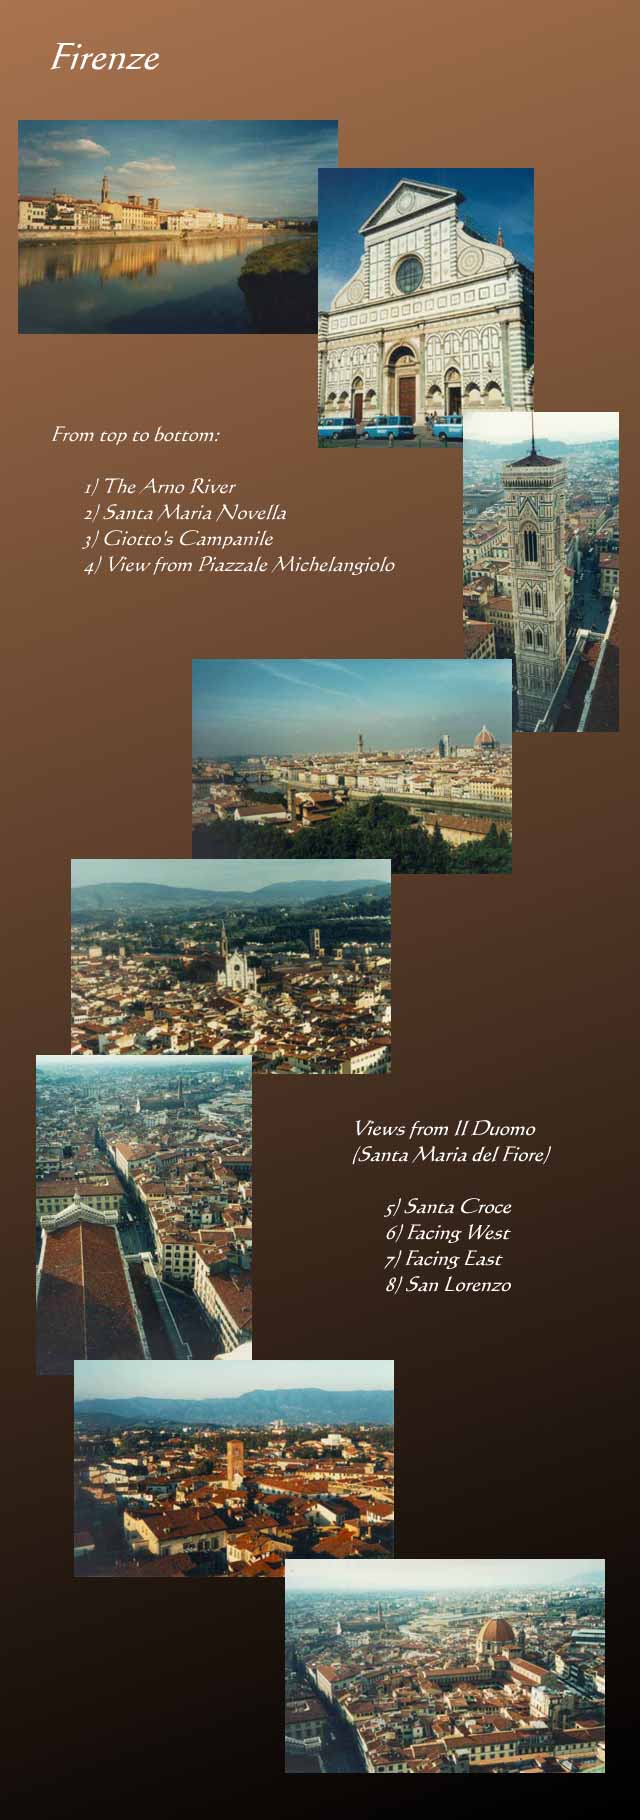 Firenze (jpeg format - 110471 bytes)